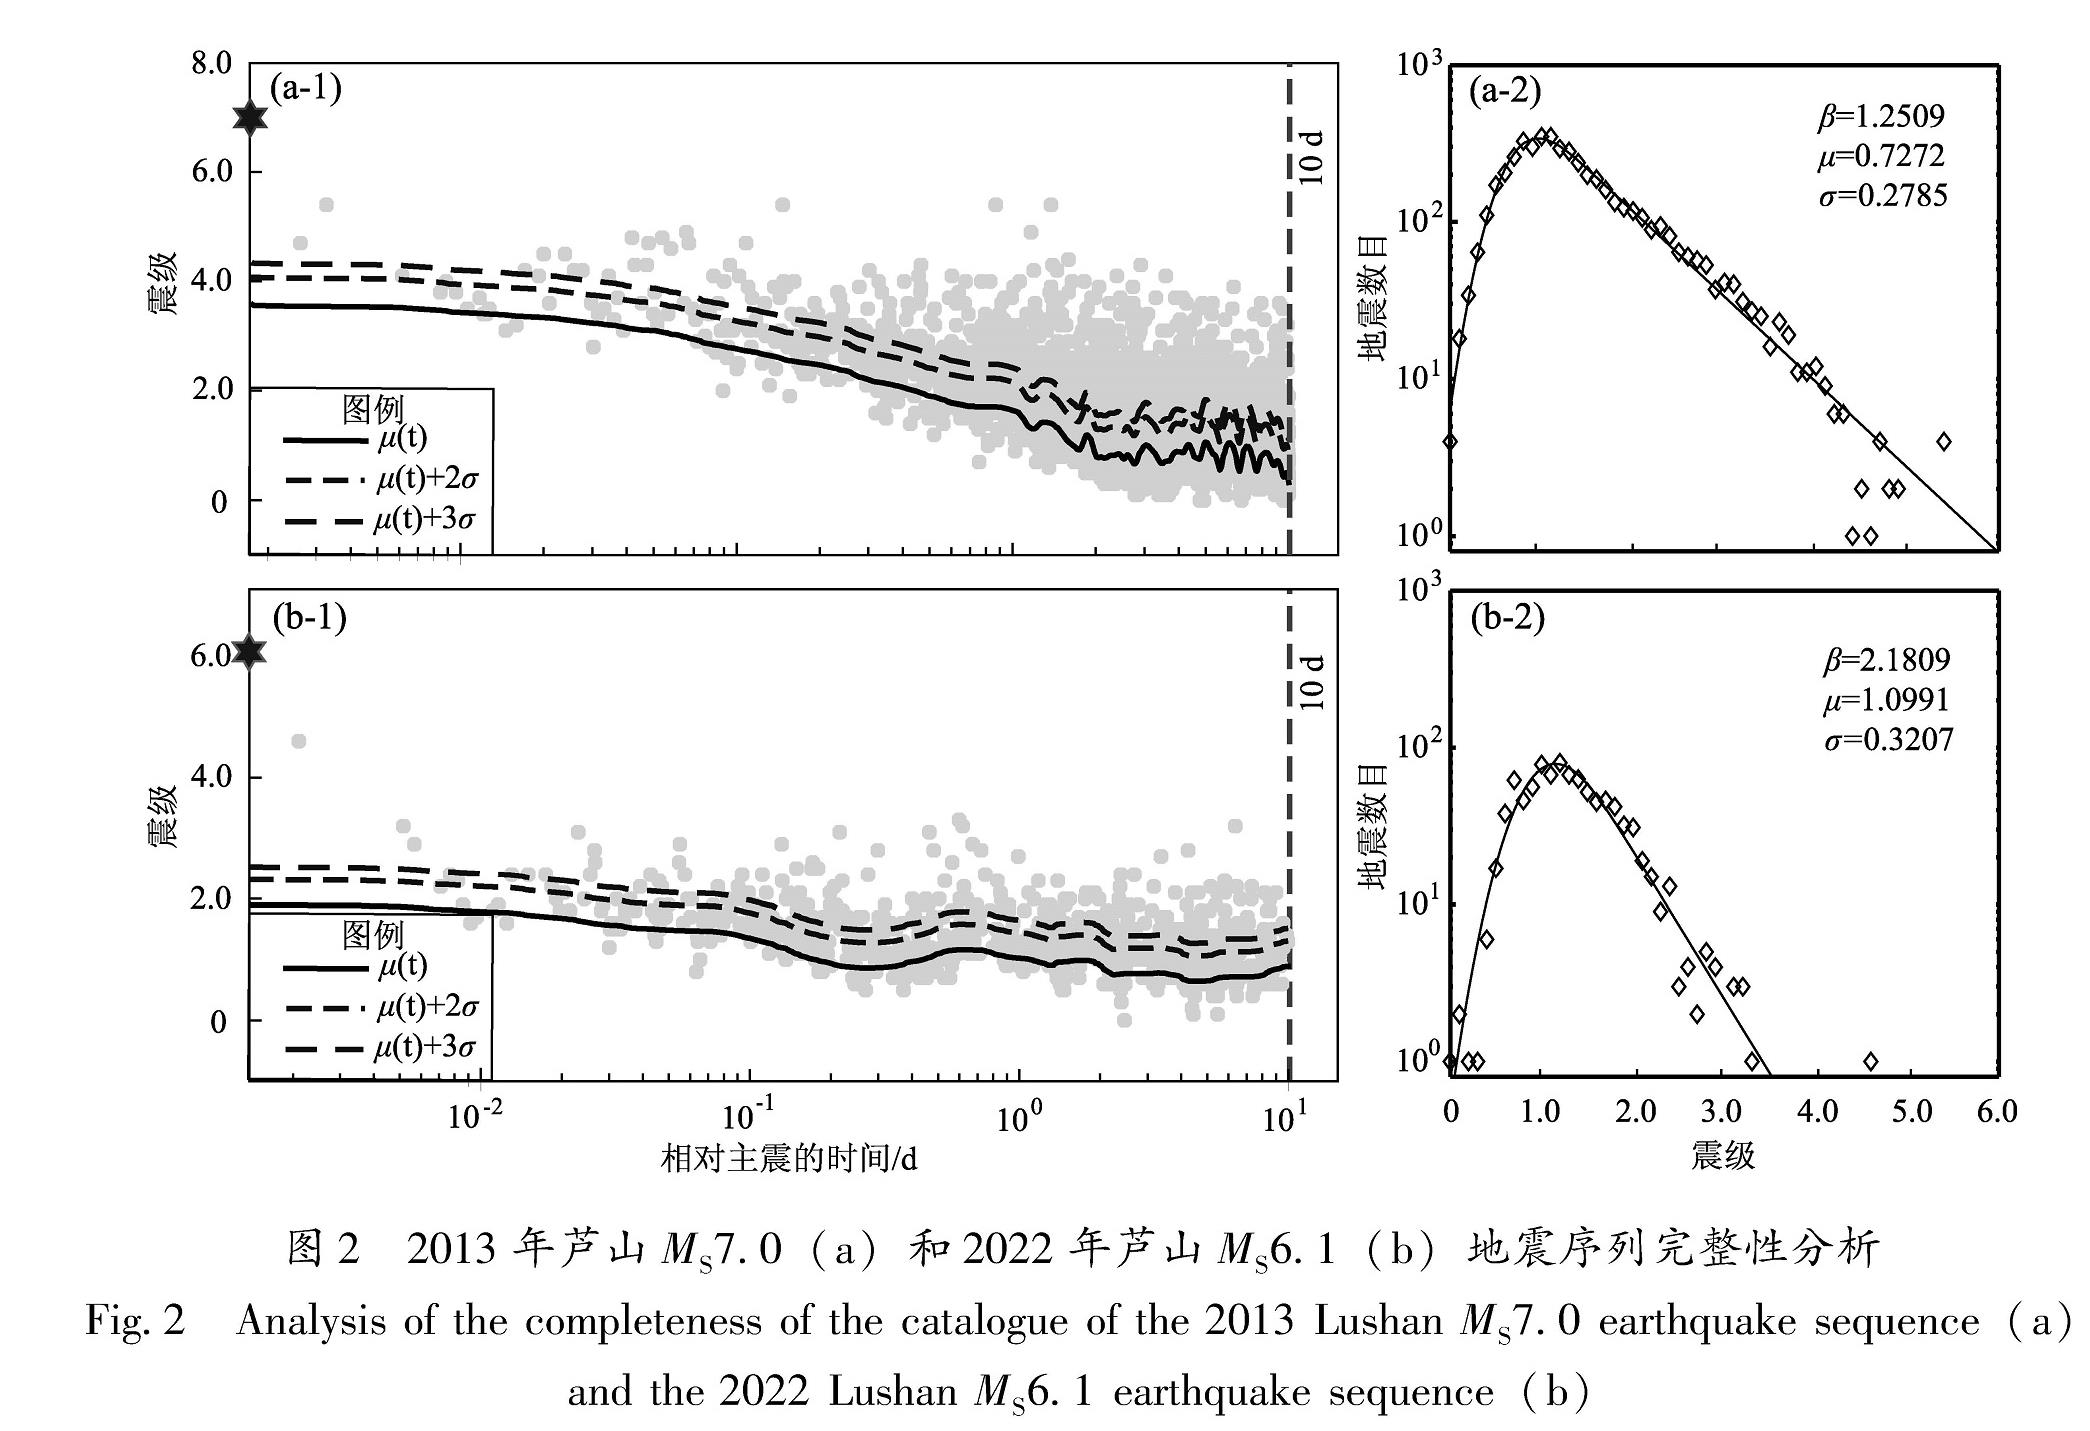 图2 2013年芦山MS7.0(a)和2022年芦山MS6.1(b)地震序列完整性分析<br/>Fig.2 Analysis of the completeness of the catalogue of the 2013 Lushan MS7.0 earthquake sequence(a) and the 2022 Lushan MS6.1 earthquake sequence(b)